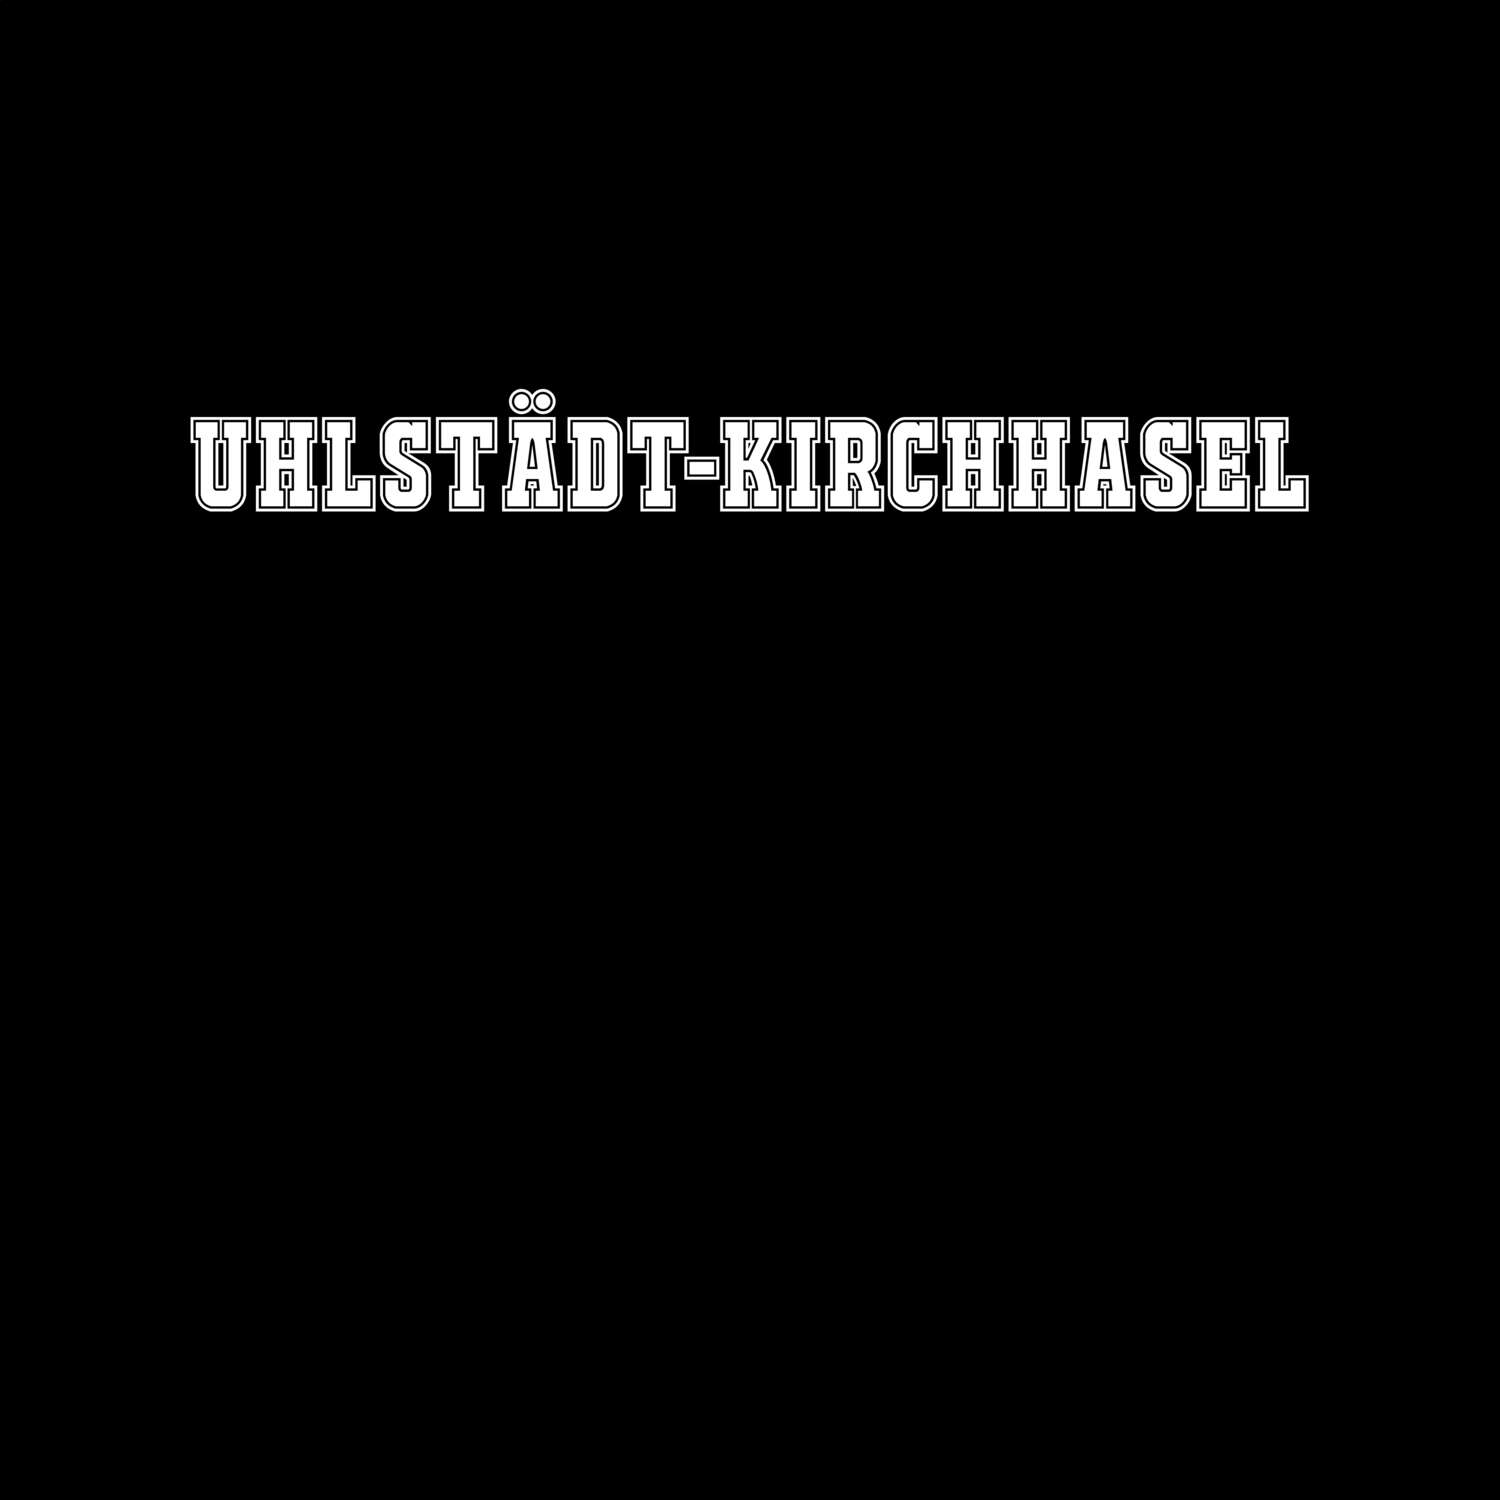 Uhlstädt-Kirchhasel T-Shirt »Classic«